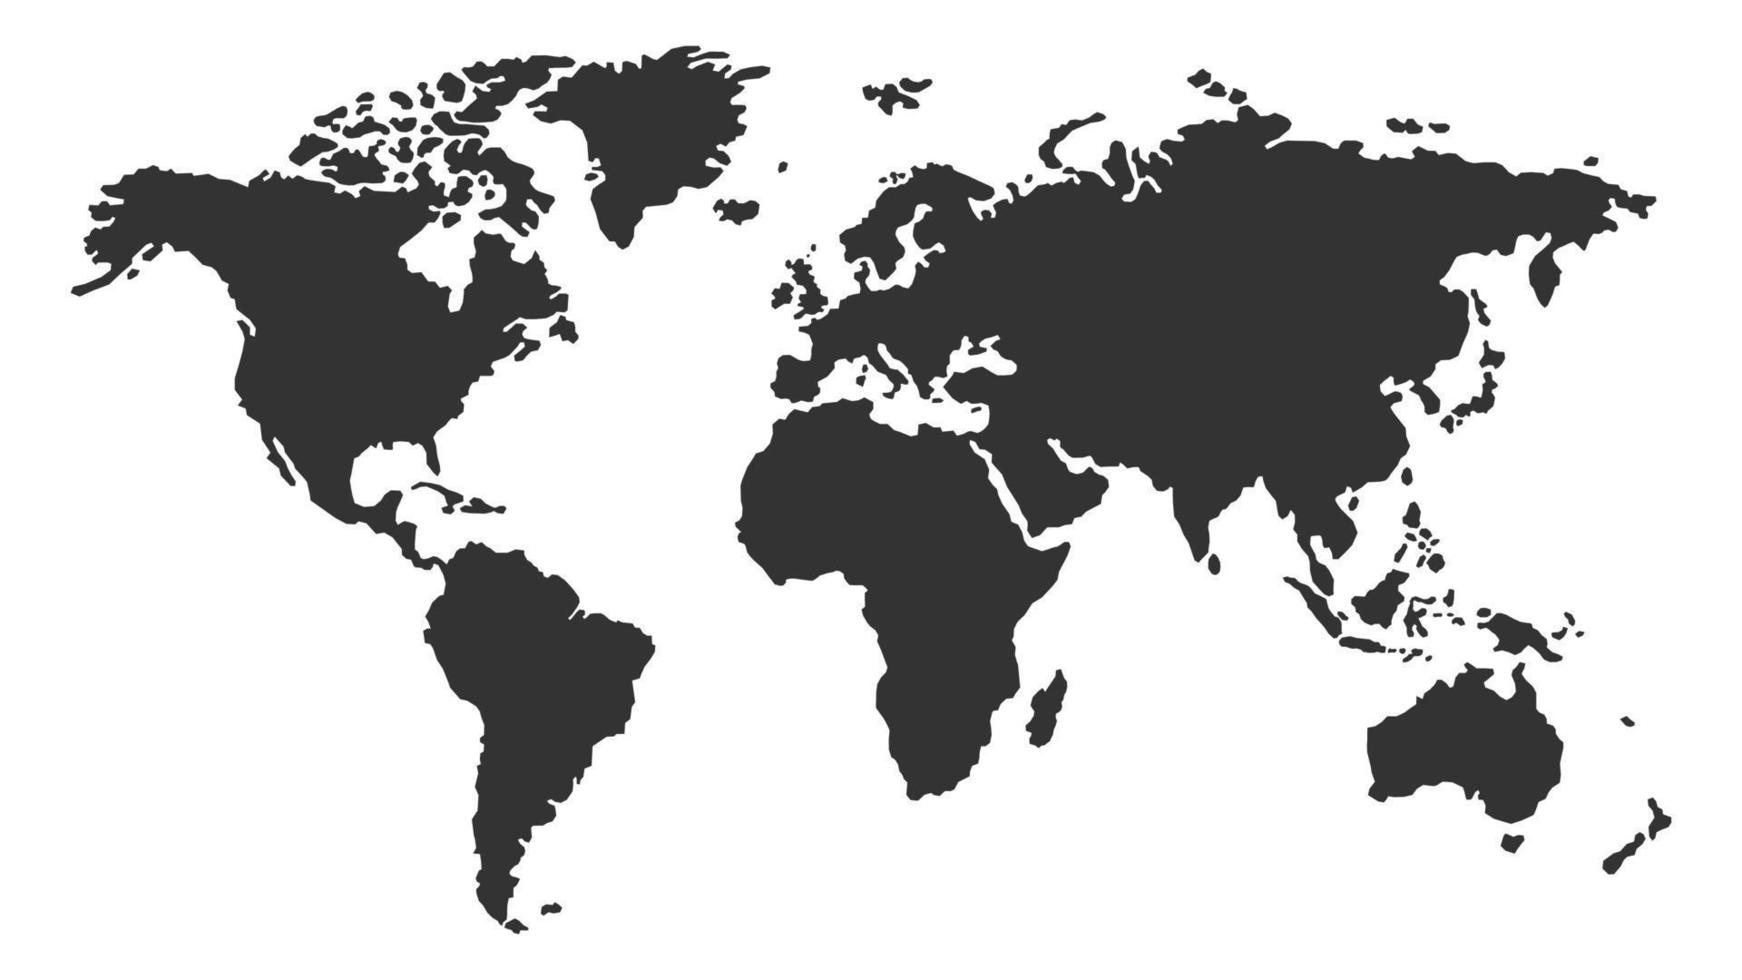 Weltkartenvektor. Flacher Erdkartenvektor. Weltkarte-Vektor-Illustration. Globus ähnliches Weltkartensymbol. Kartensilhouette. vektor